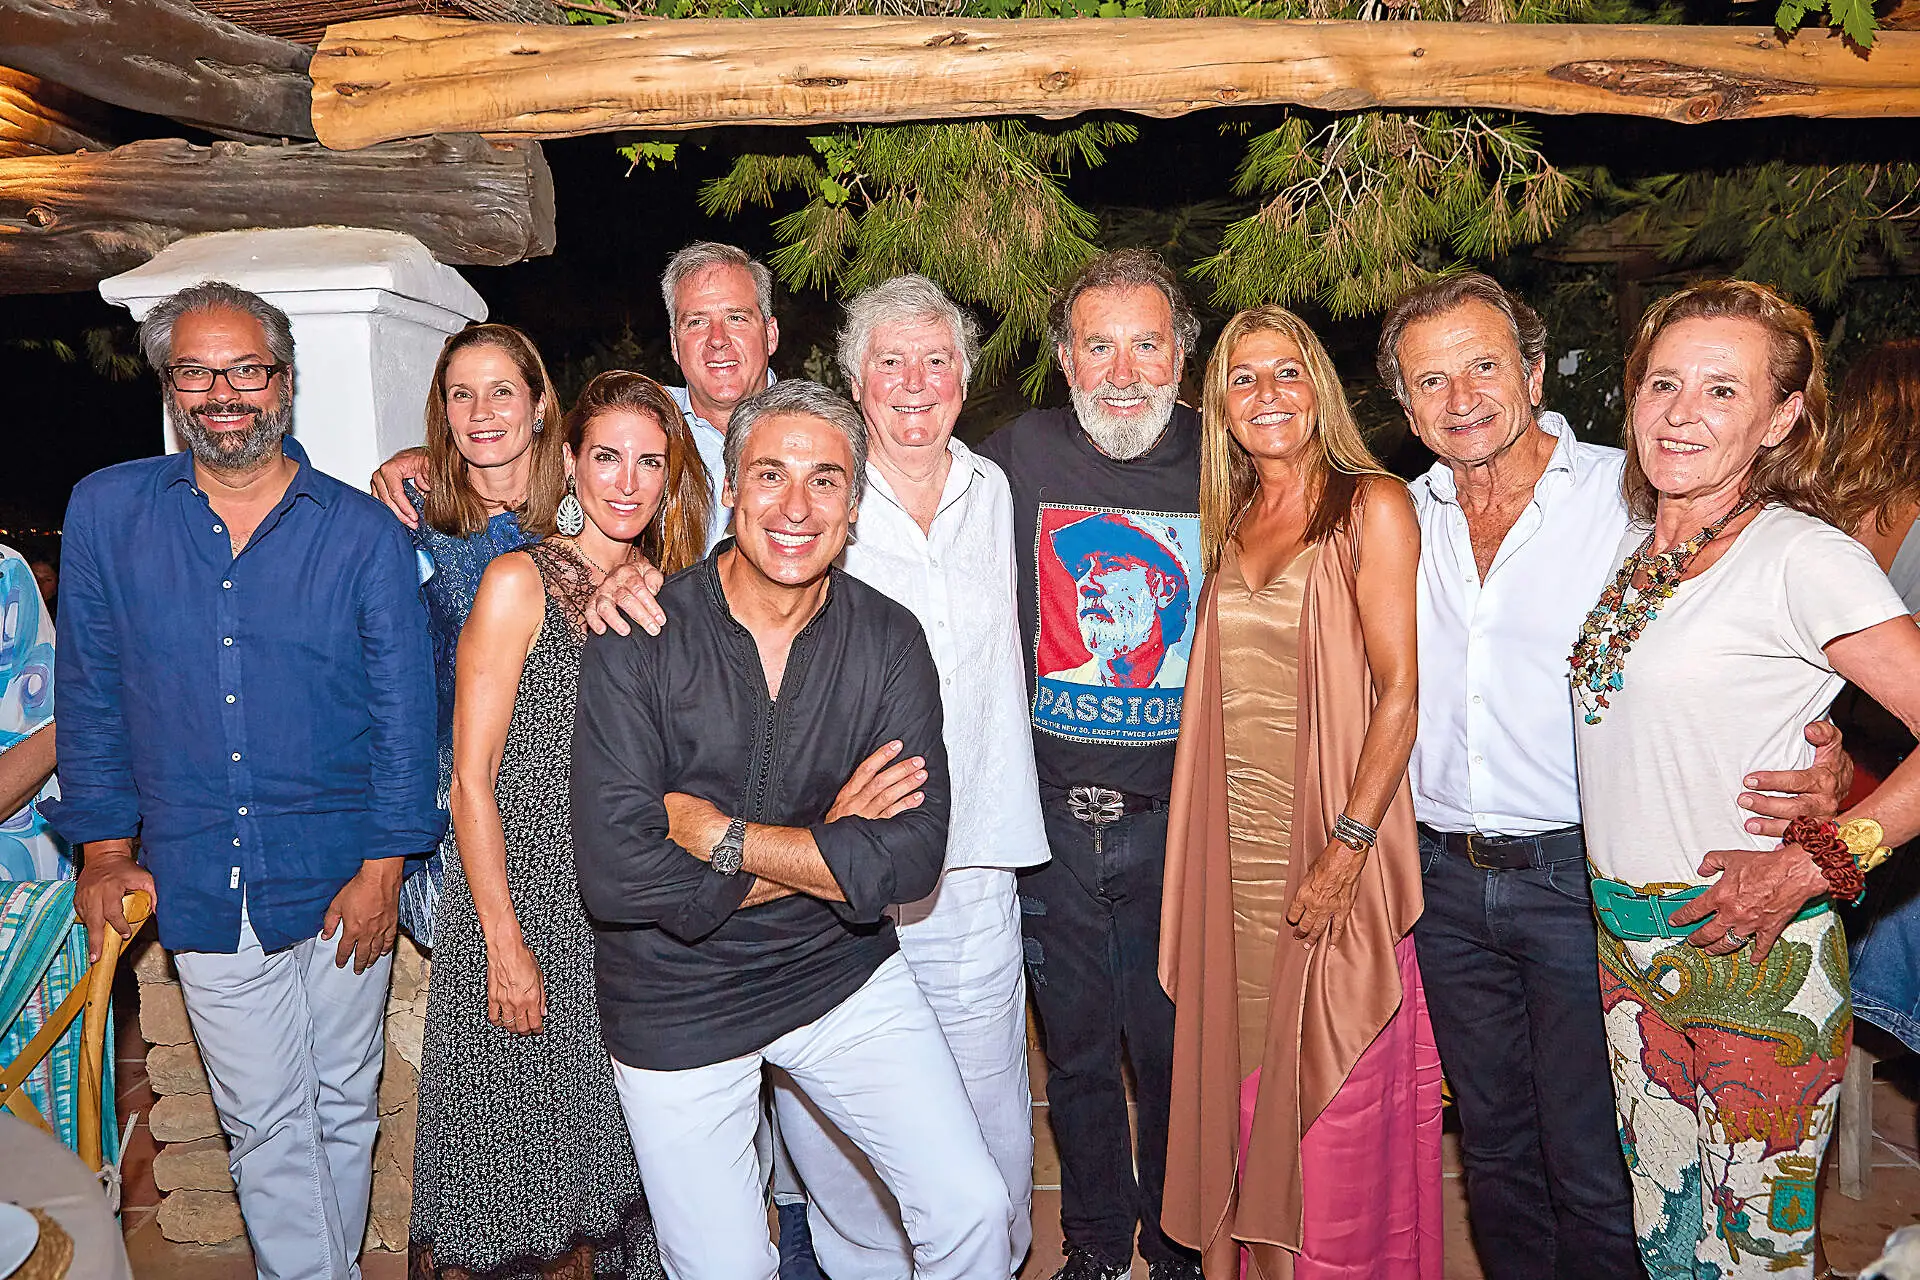 El aniversario de il Cavaliere Pino - La guía de Ibiza y Formentera